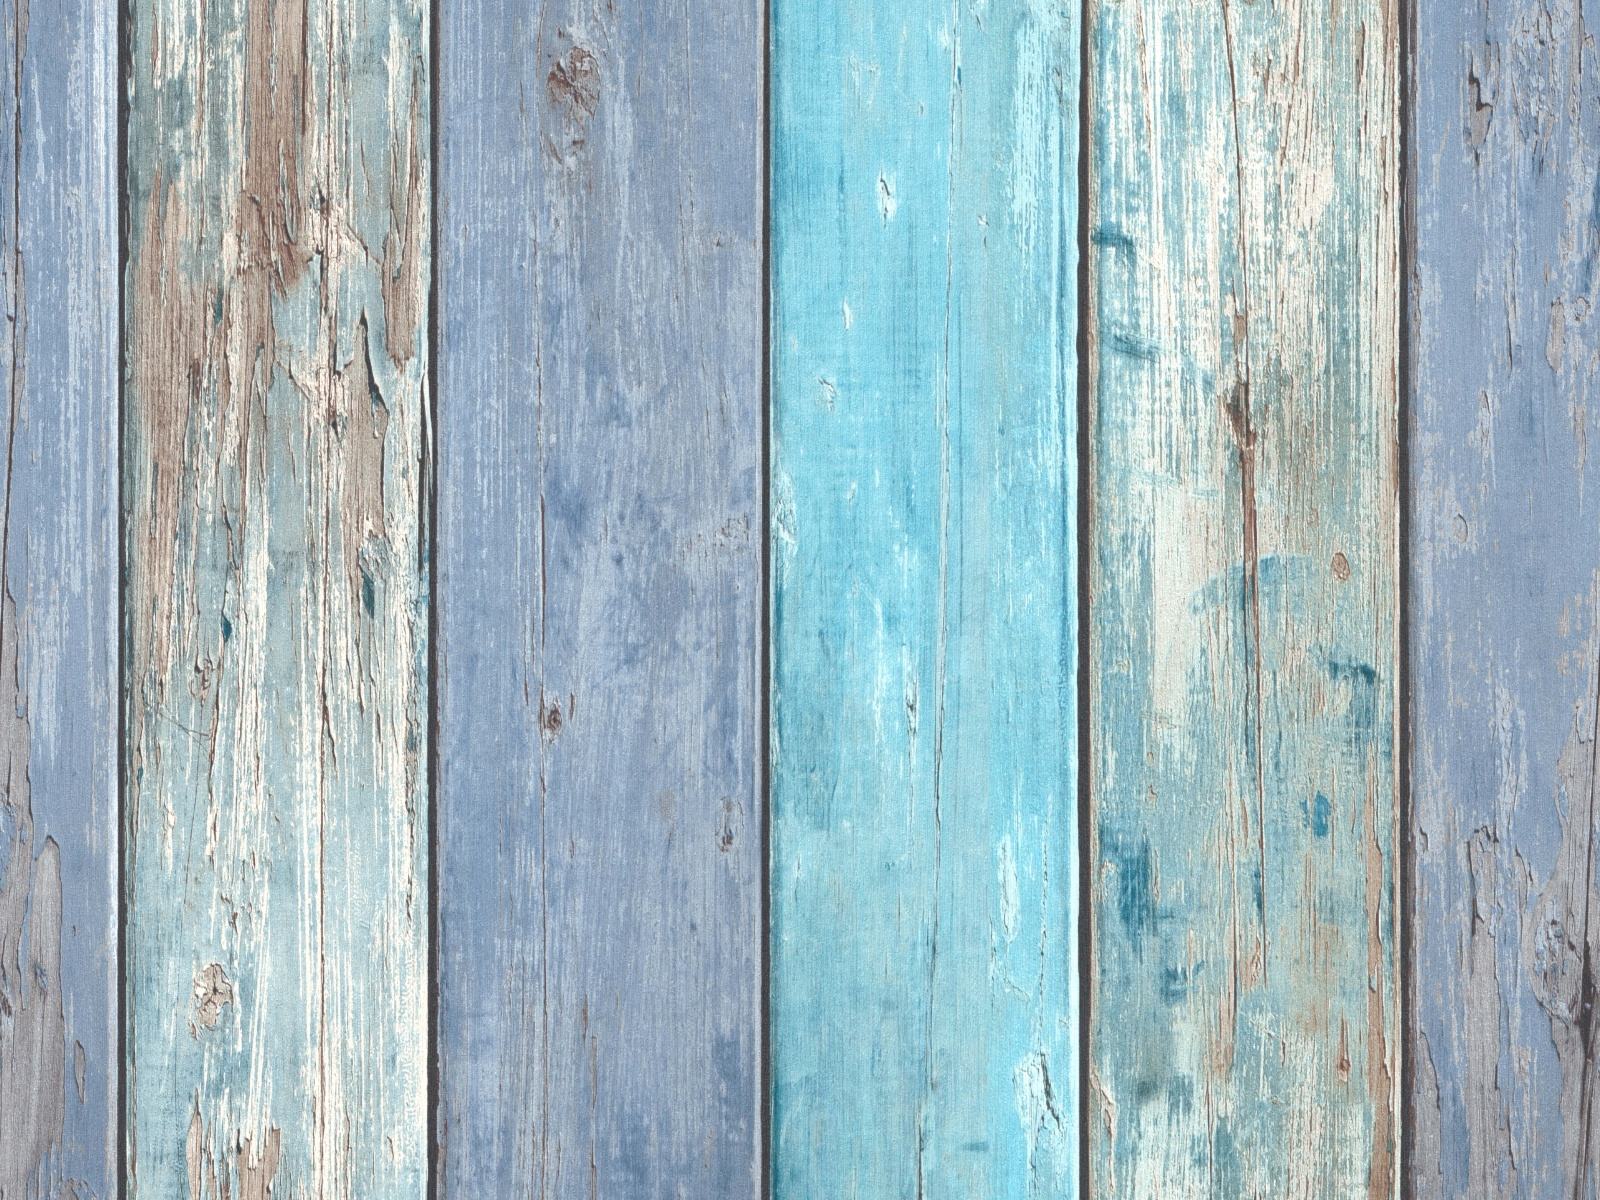 Vliesová tapeta s dizajnom drevených starých dosiek s efektom morskej patiny v modrozelenej farbe, ER-601417